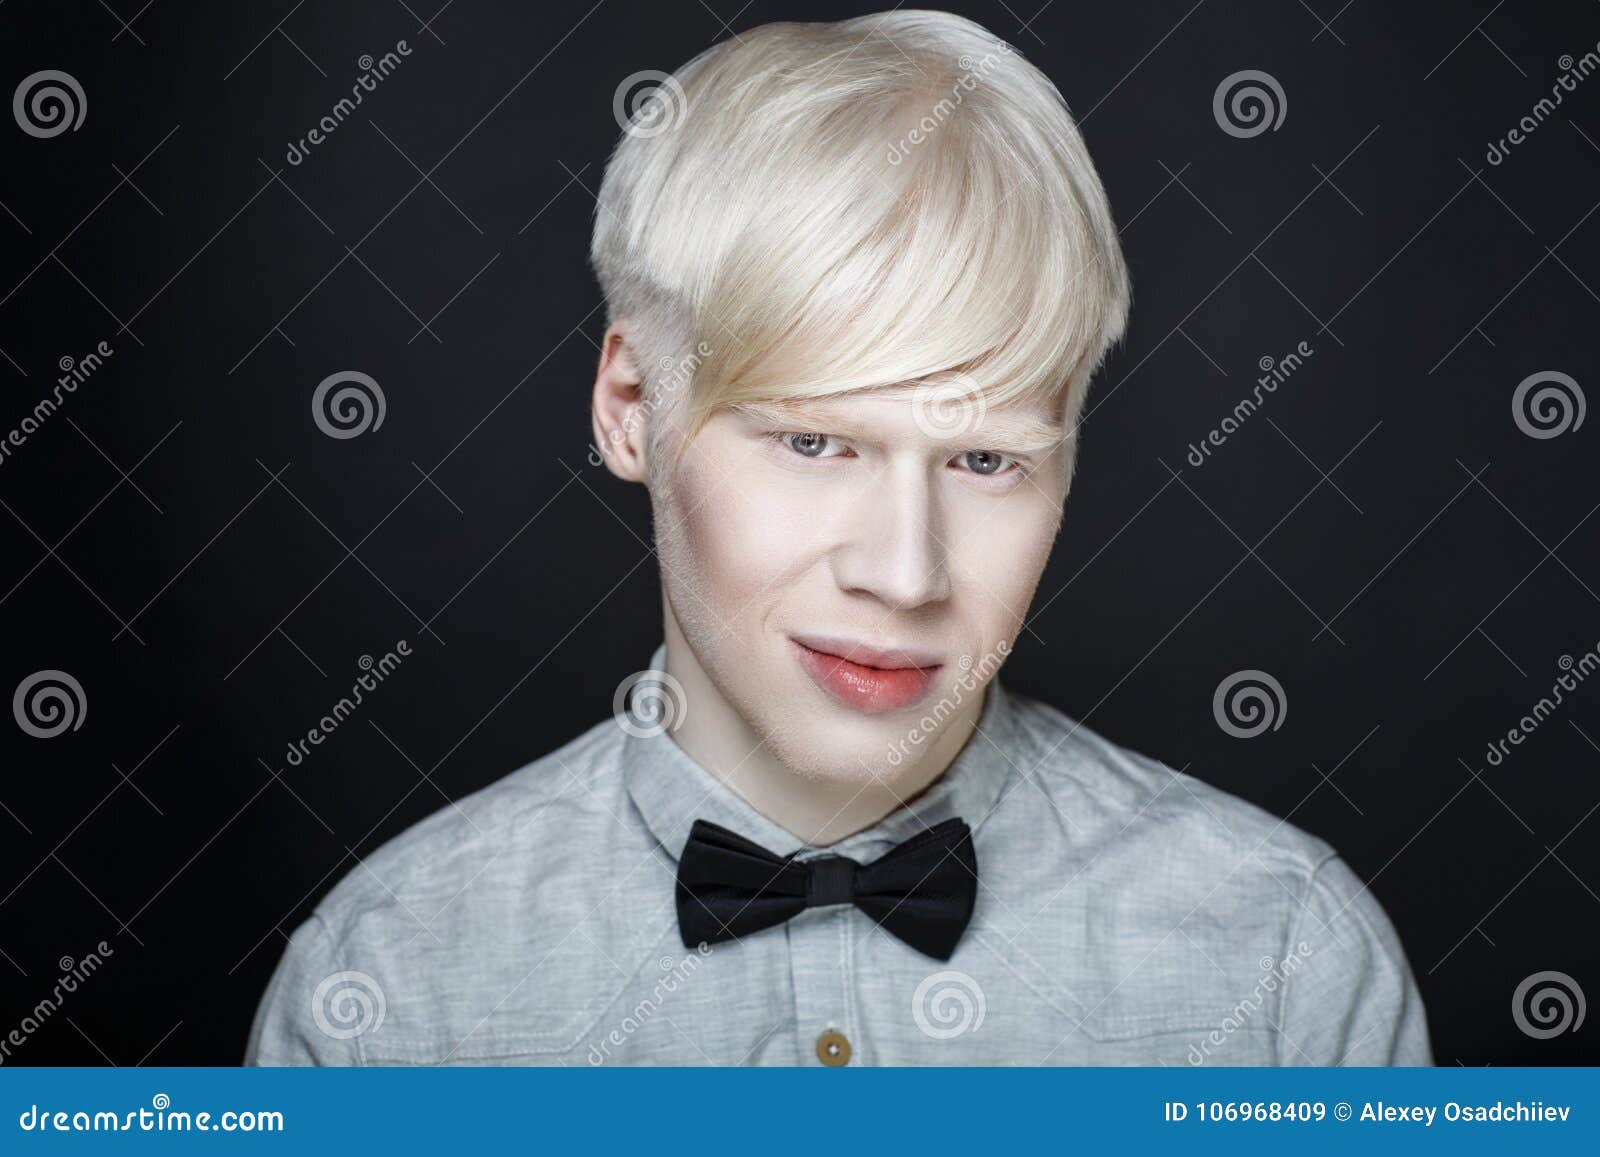 Vaarwel Praten Winkelier De Witte Huid Van De Albinomens Stock Afbeelding - Image of achtergrond,  haar: 106968409